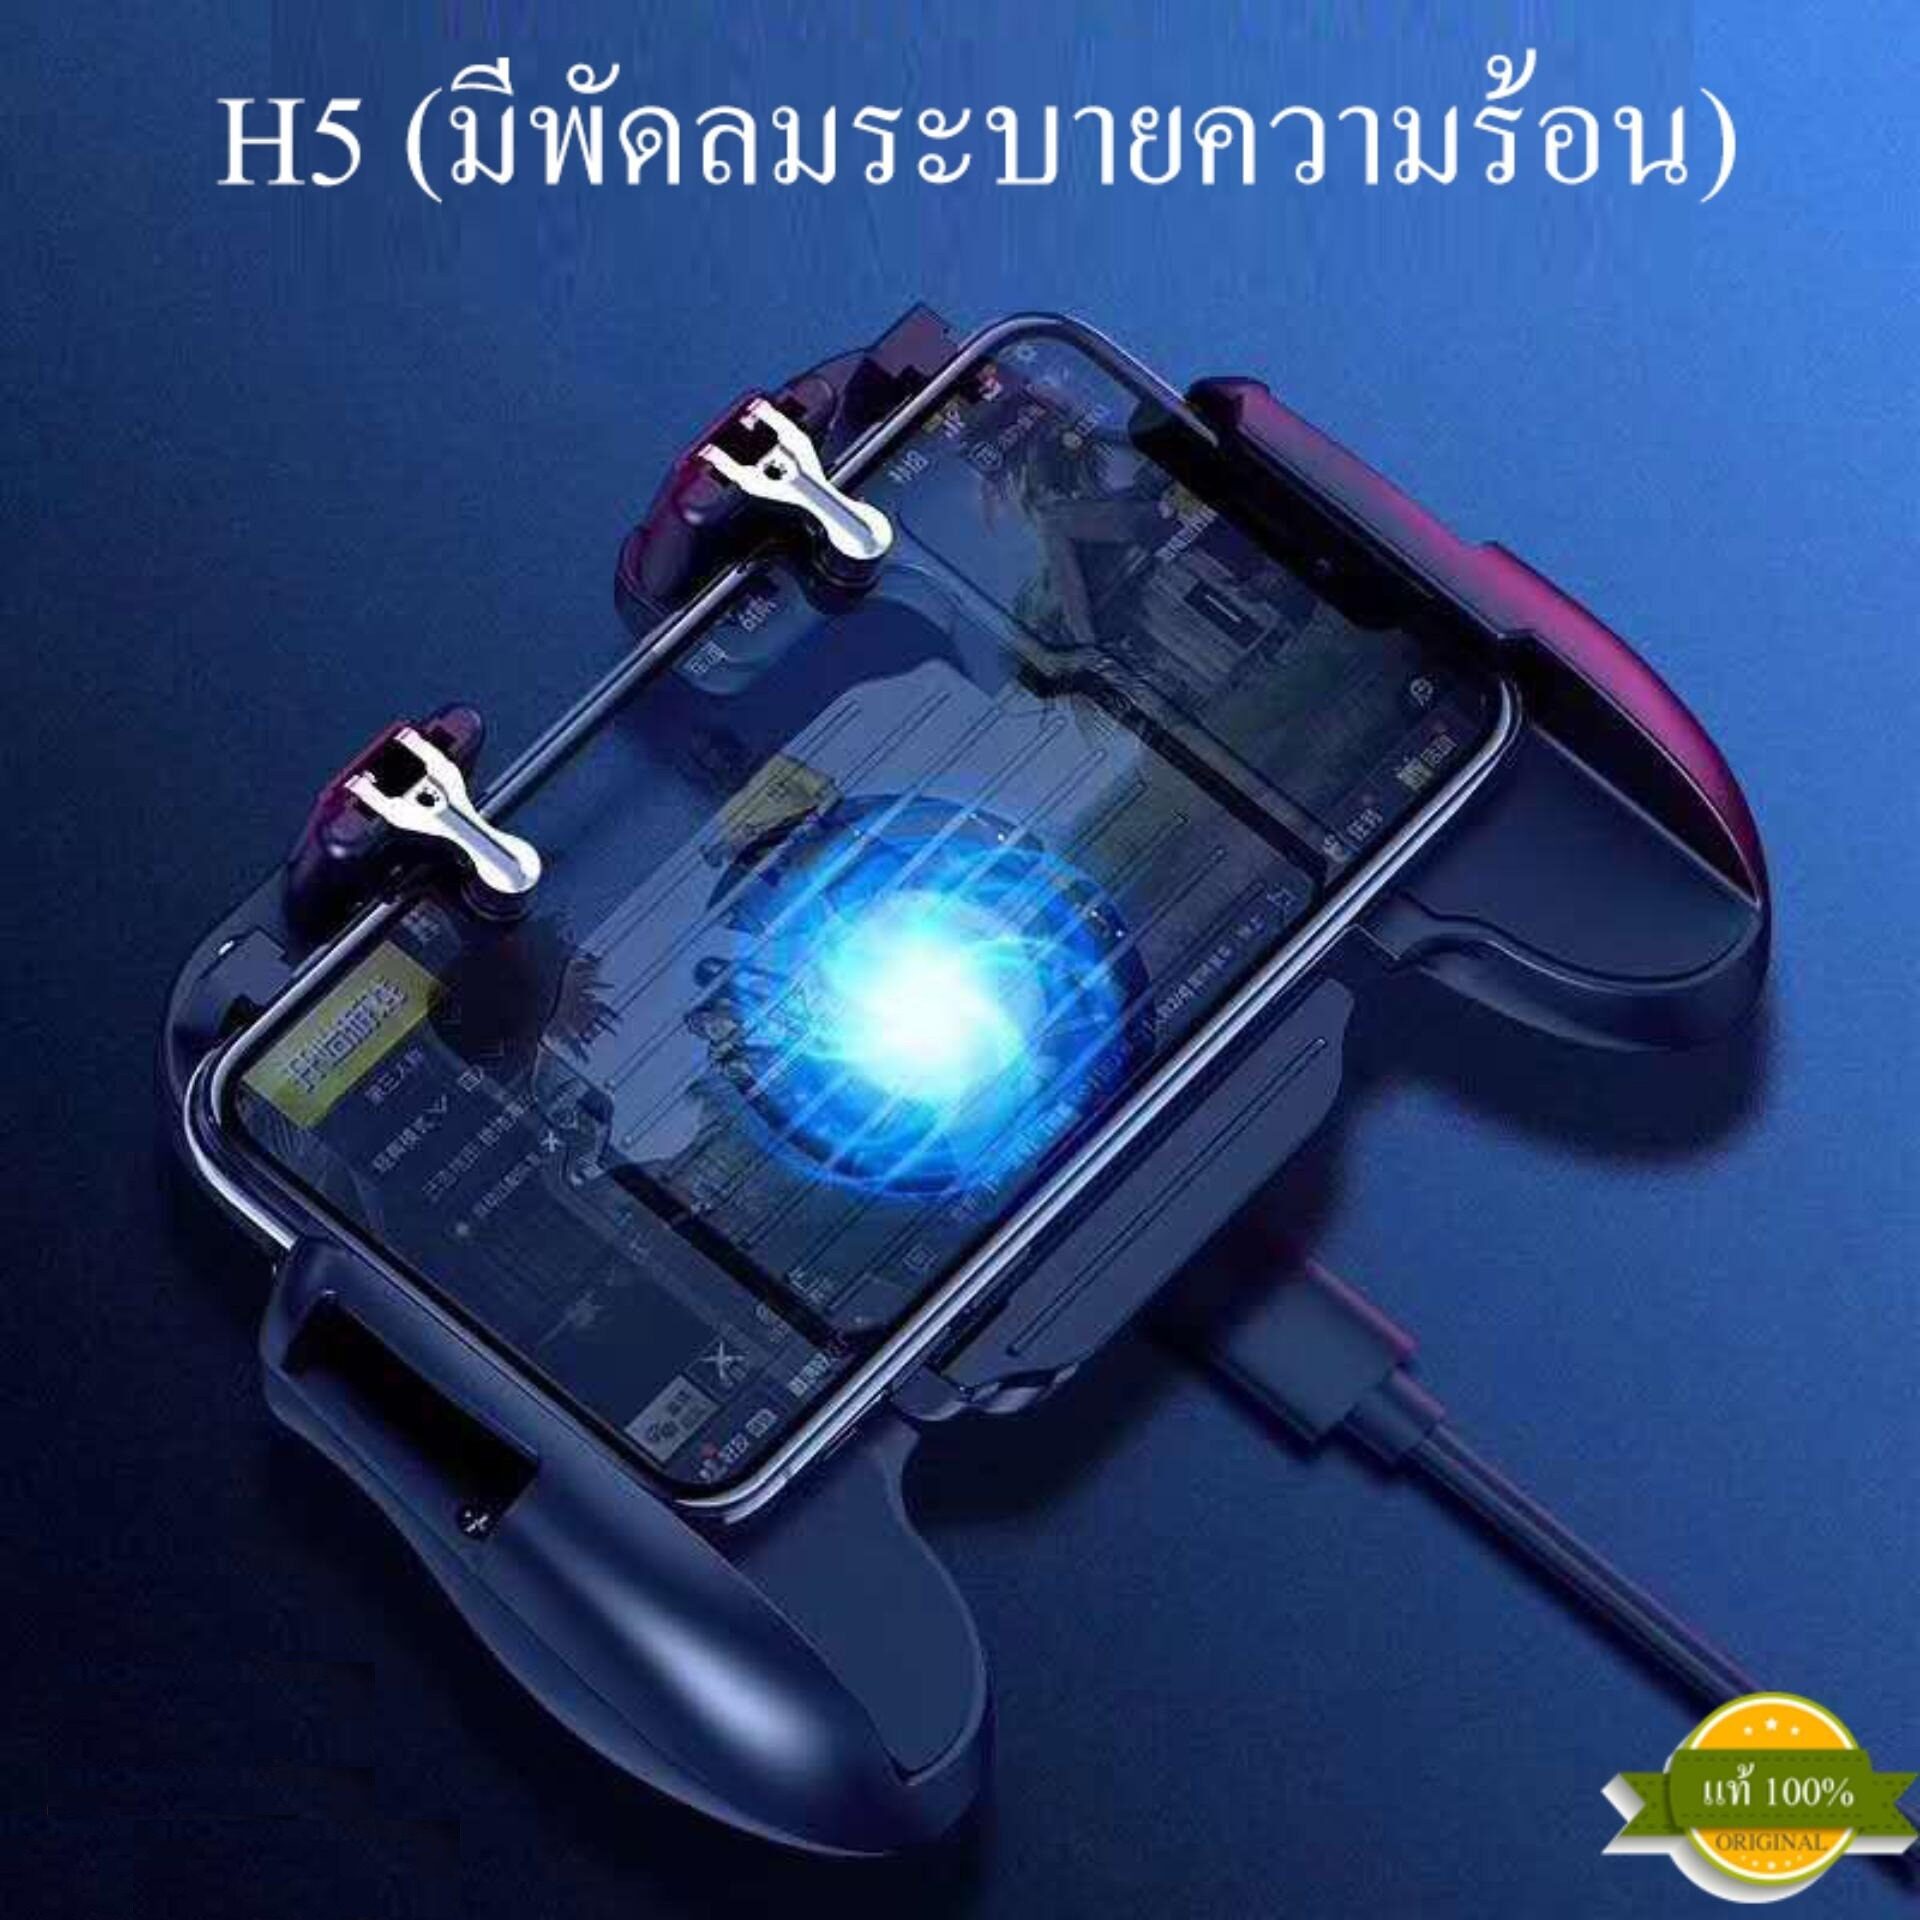 ด้ามจับ Gamepad H5 มีพัดลมระบาย (แถมฟรีสายชาร์จ) พร้อมปุ่มยิง PUBG / Free Fire จอยเกม จอยเกมส์ จอยเกมส์มือถือ จอยเกมส์ pubg ฟีฟาย Mobile GAMEPAD Mobile Joystick Game Controller Gamepad Trigger จอยกินไก่